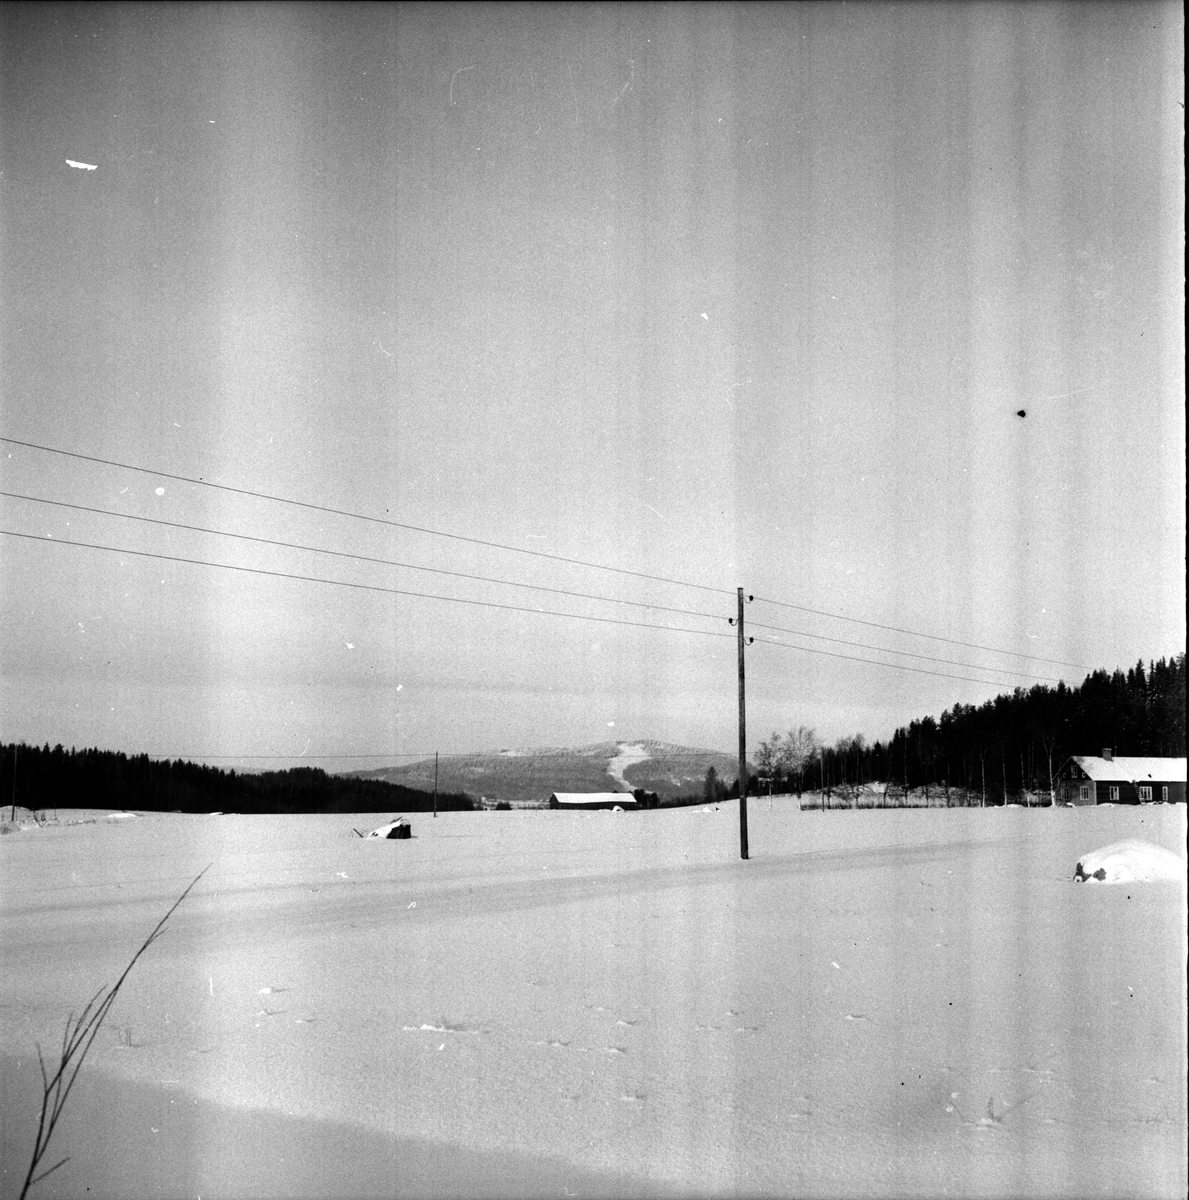 Arbrå, "Trivsla" i Roren. Till höger "Westbergs" i början av byn Roren, Vallsta. I bakgrunden syns Åsberget (Orfa).
Foto januari 1970.